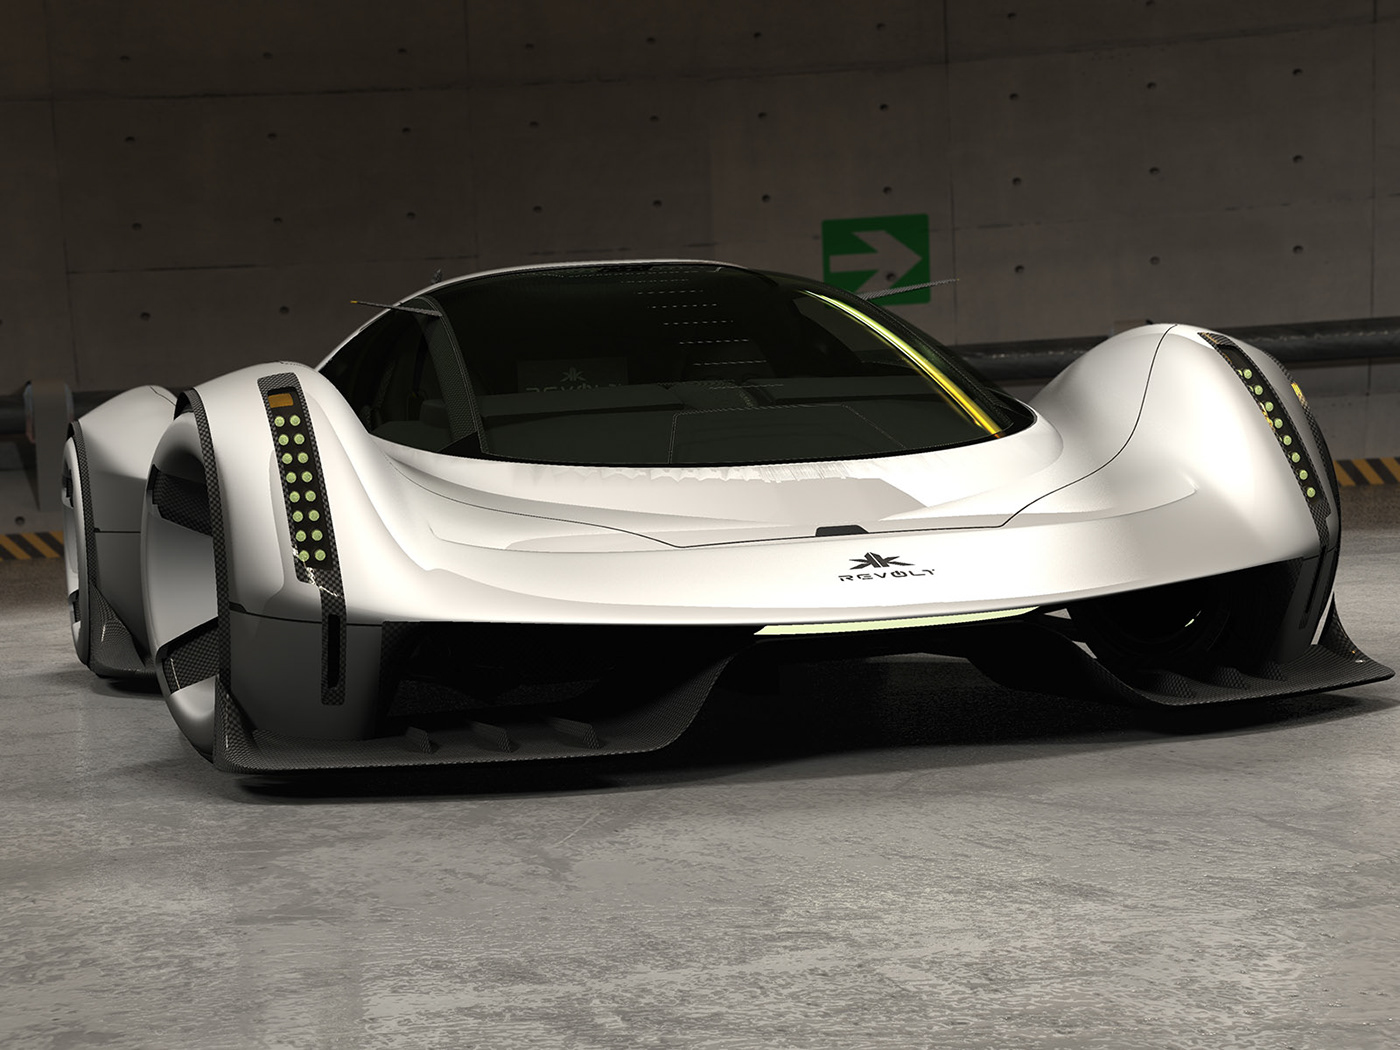 automotive   Automotive design car design concept concept car hypercars industrial design  transportation Vehicle